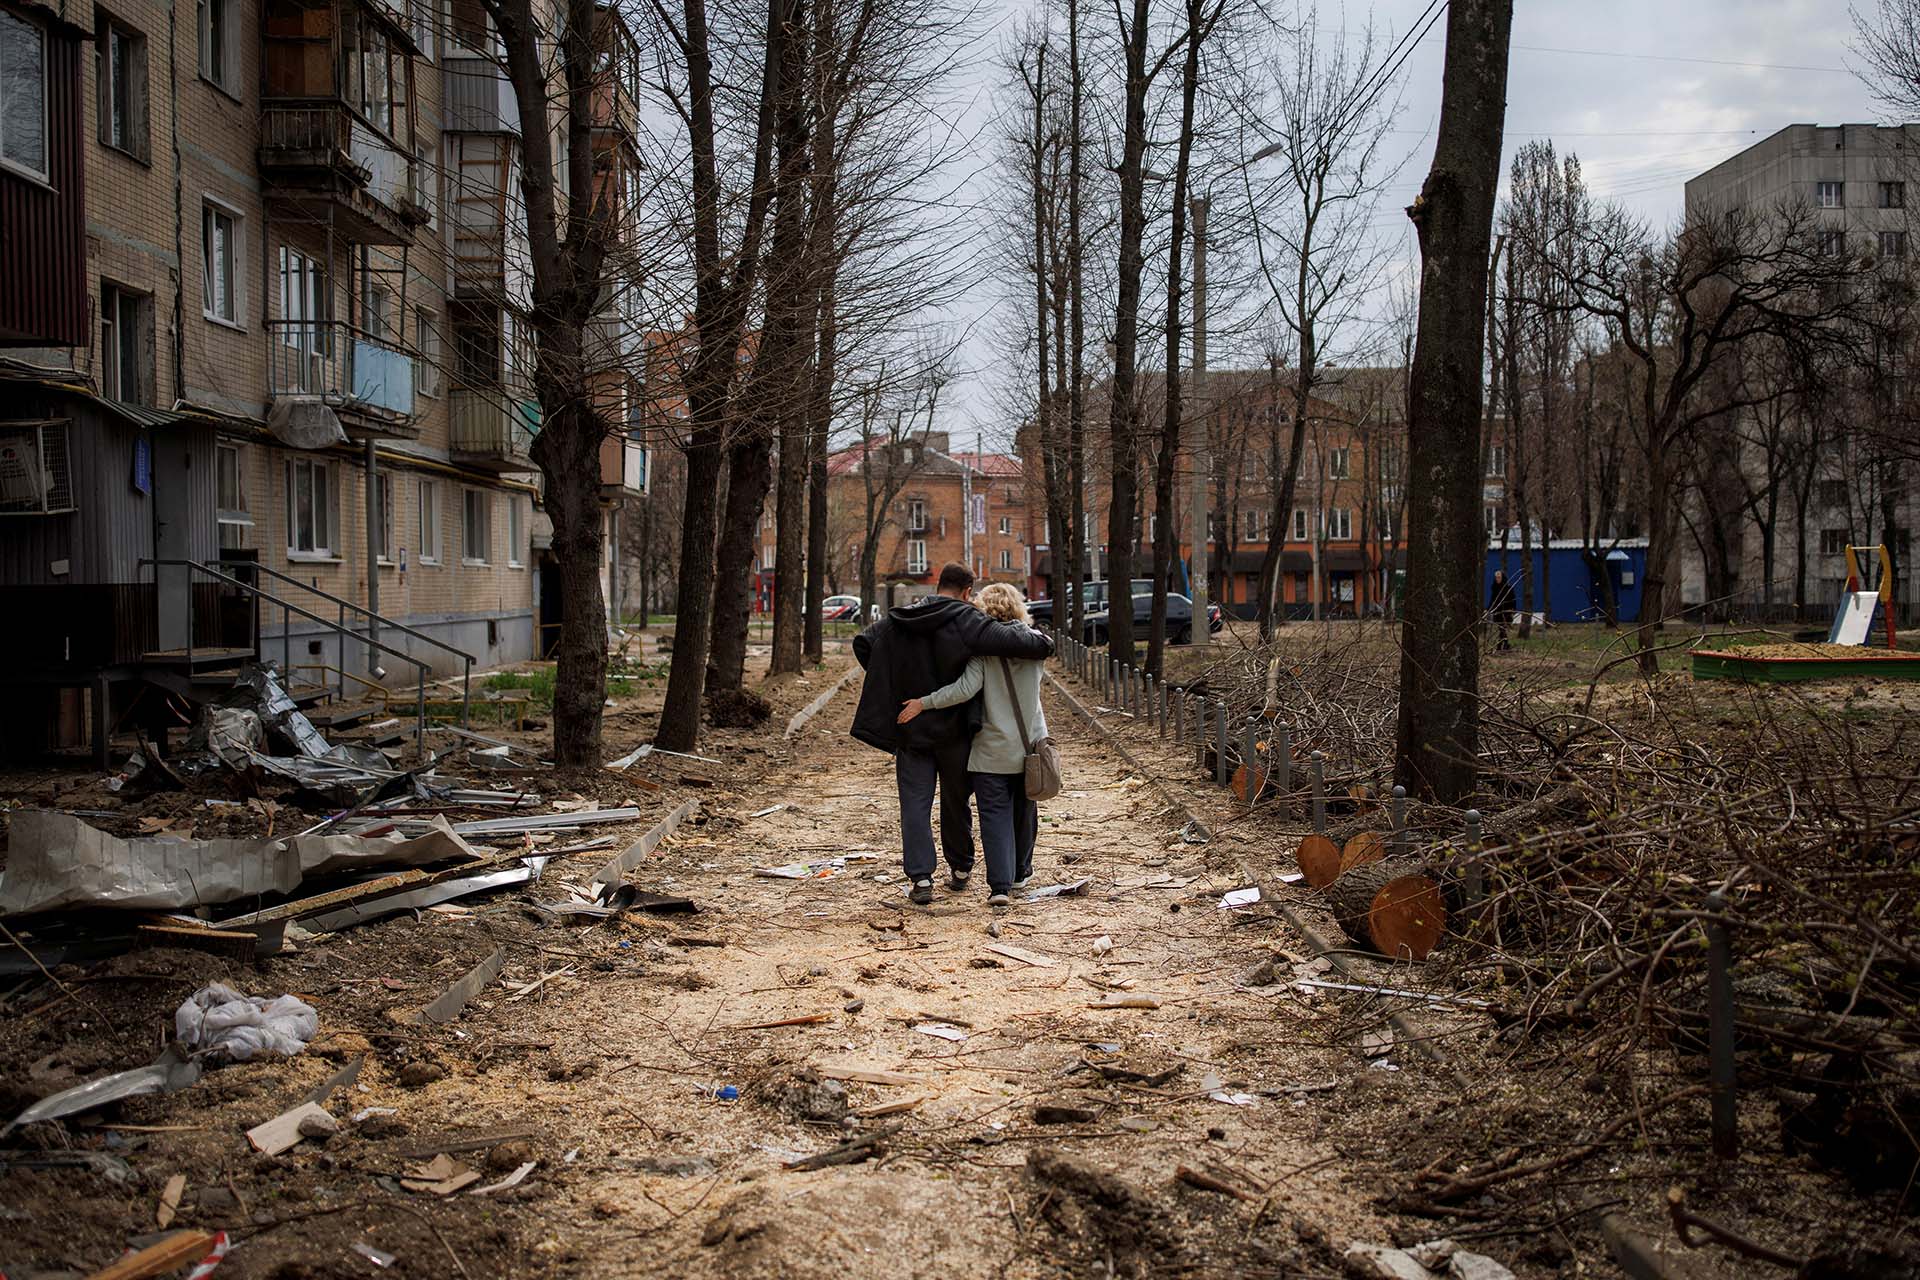 Una pareja camina abrazada entre edificios bombardeados por Rusia en la ciudad de Kharkiv, Ucrania (REUTERS/Alkis Konstantinidis)